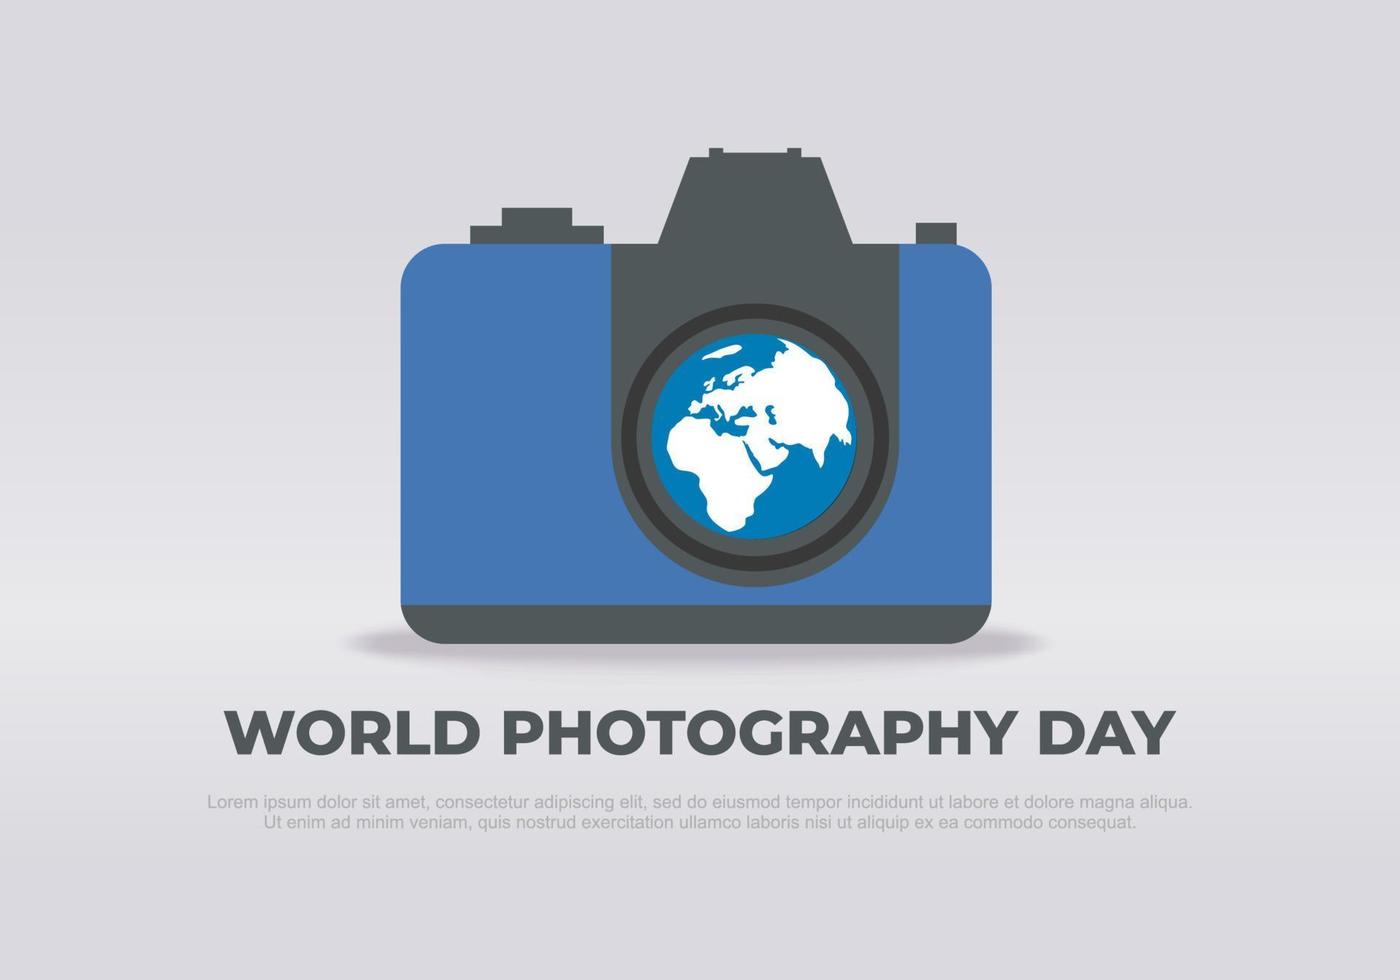 wereldfotografie dag spandoek poster op 19 augustus met vintage camera en wereldkaart op grijze achtergrond. vector